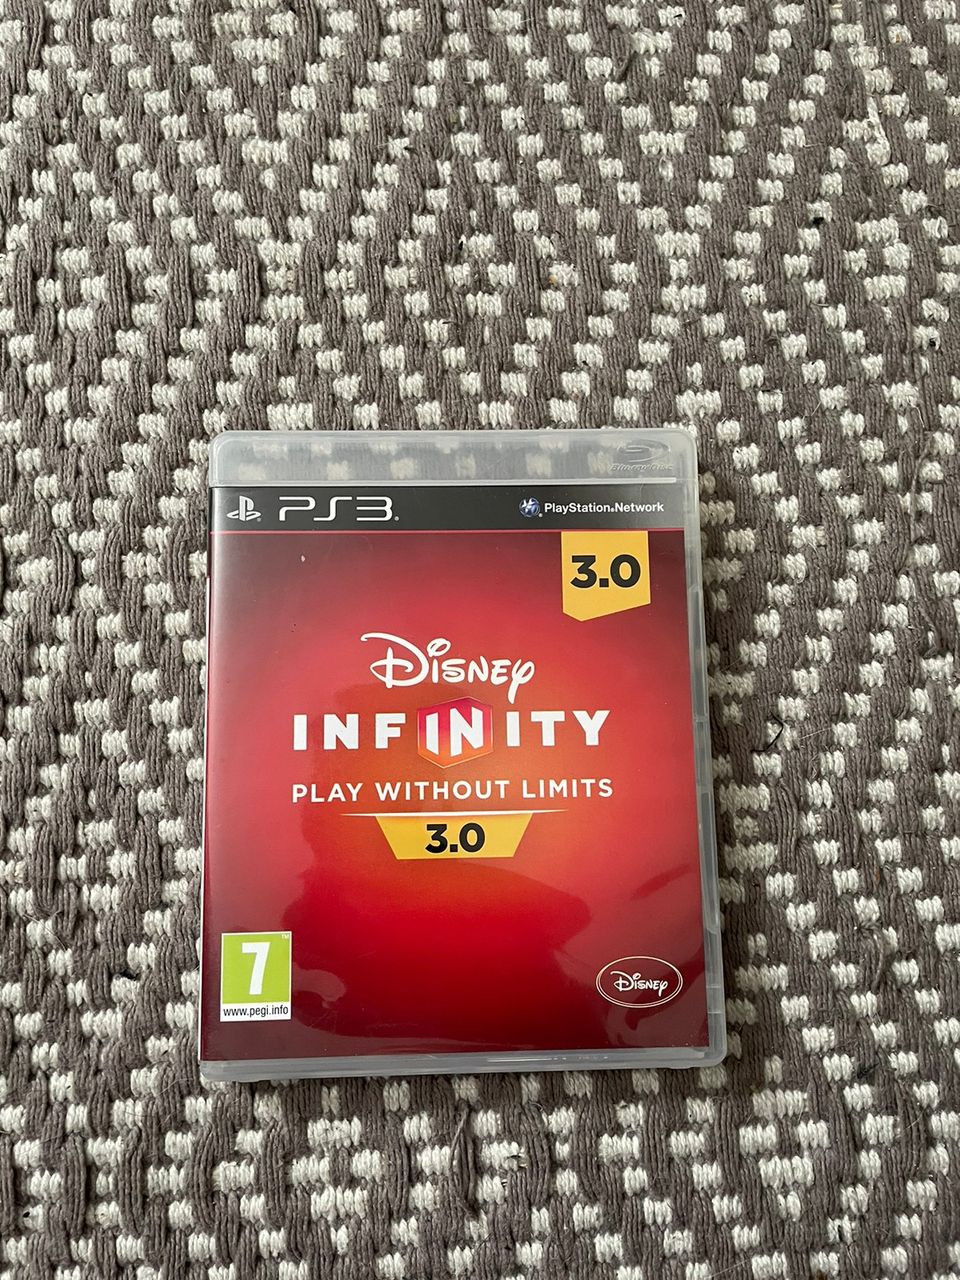 Ps3 Disney infinity 3.0